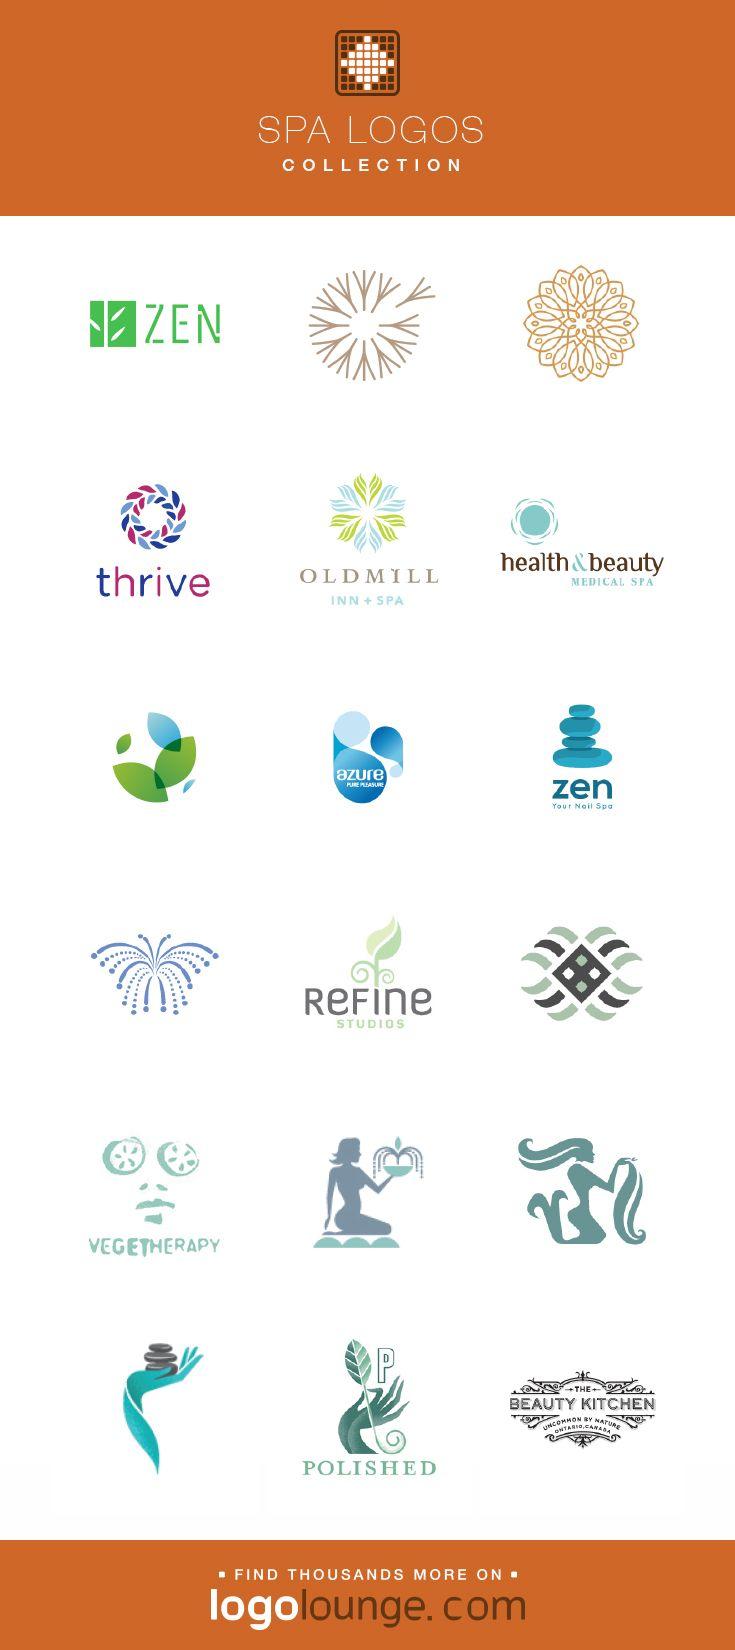 Zen Spa Logo - Logo Collection : Spa vector logo designs. Zen, peace, fountain ...